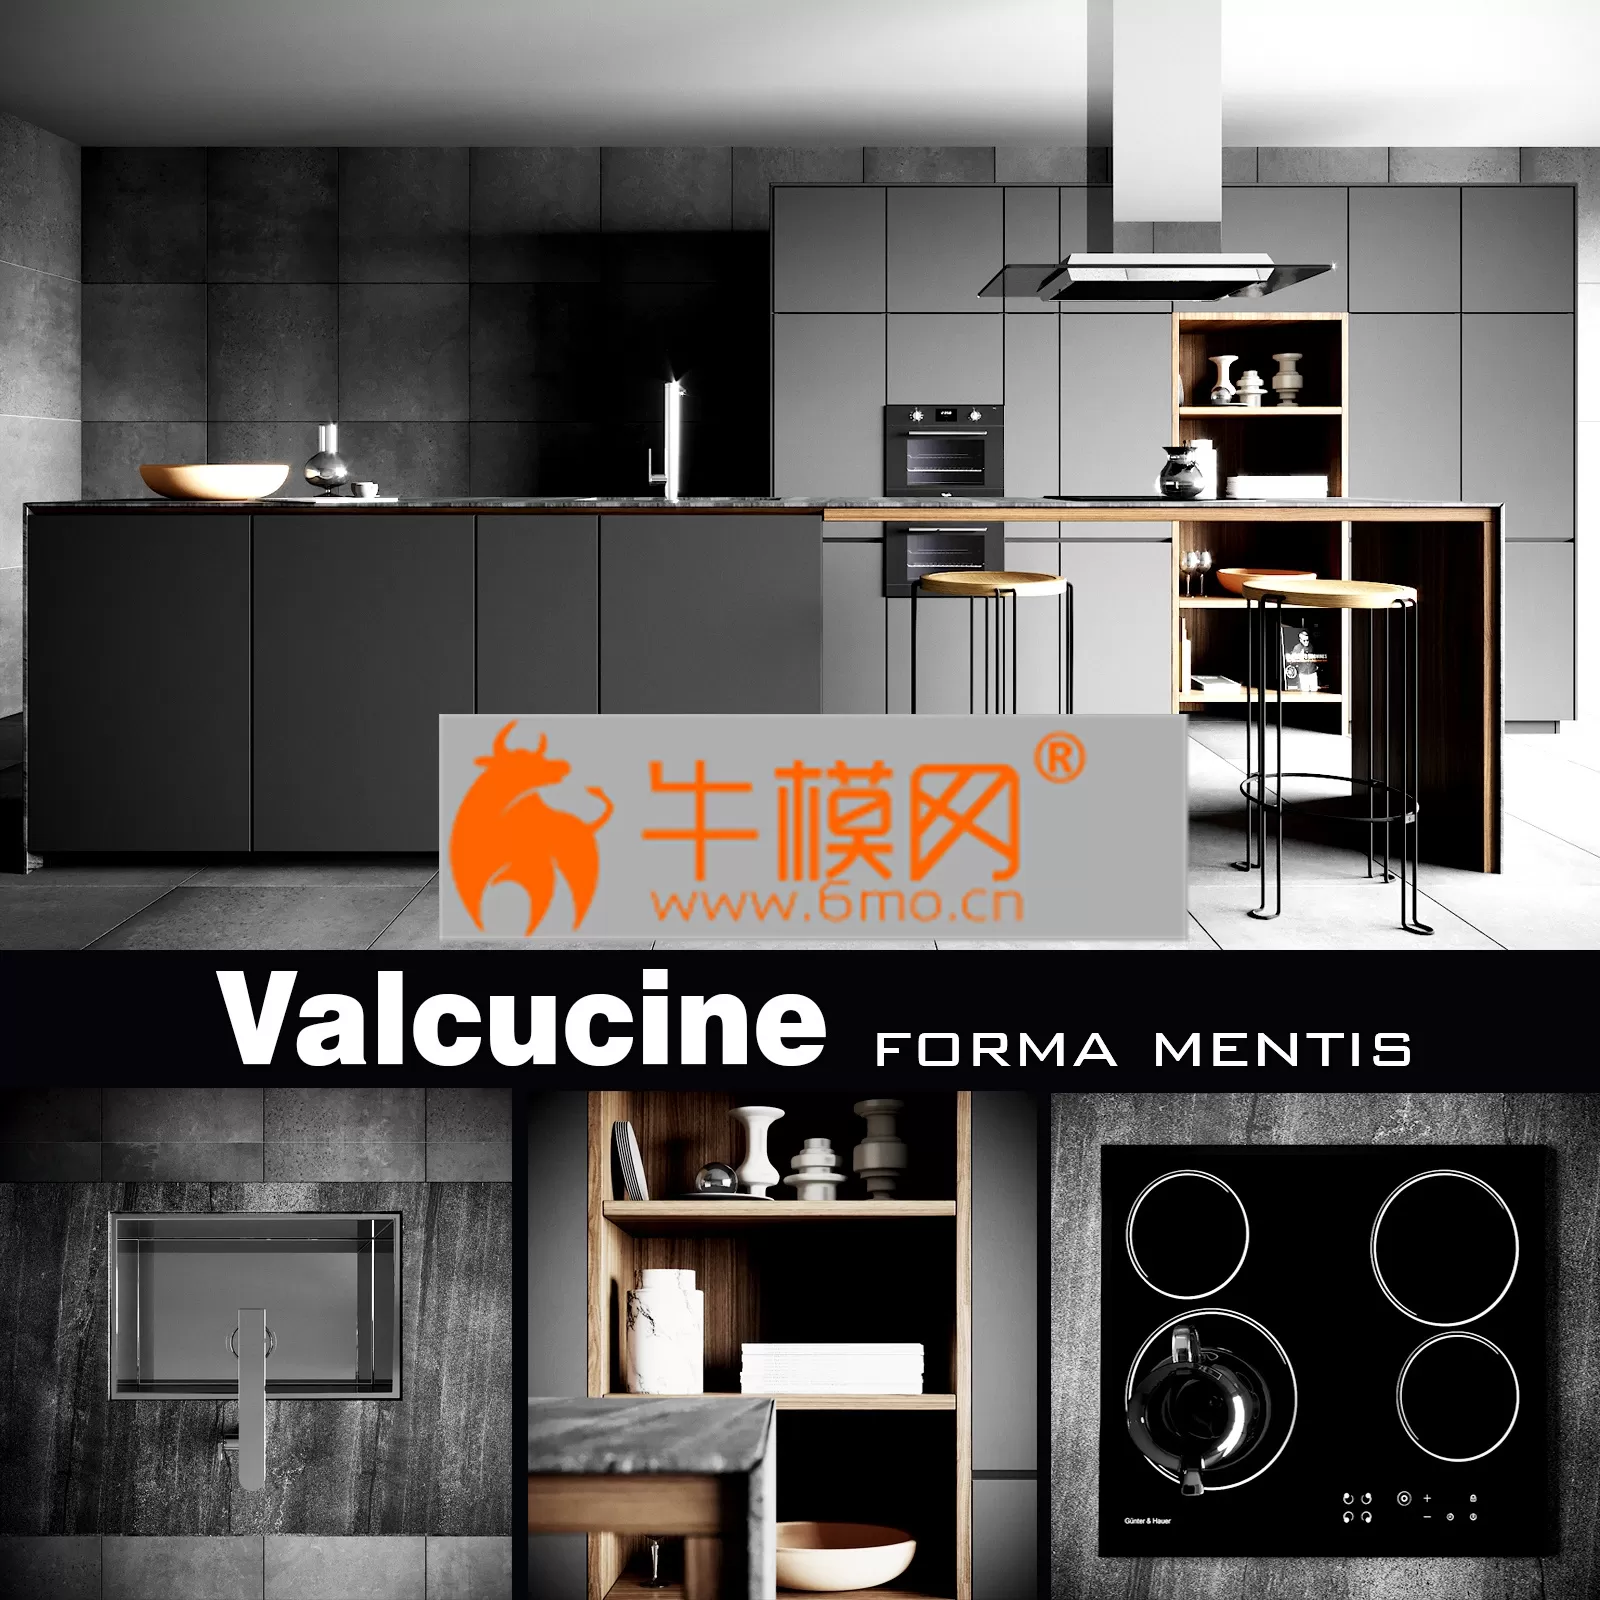 KITCHEN DECOR – Valcucine Forma Mentis Dark Kitchen